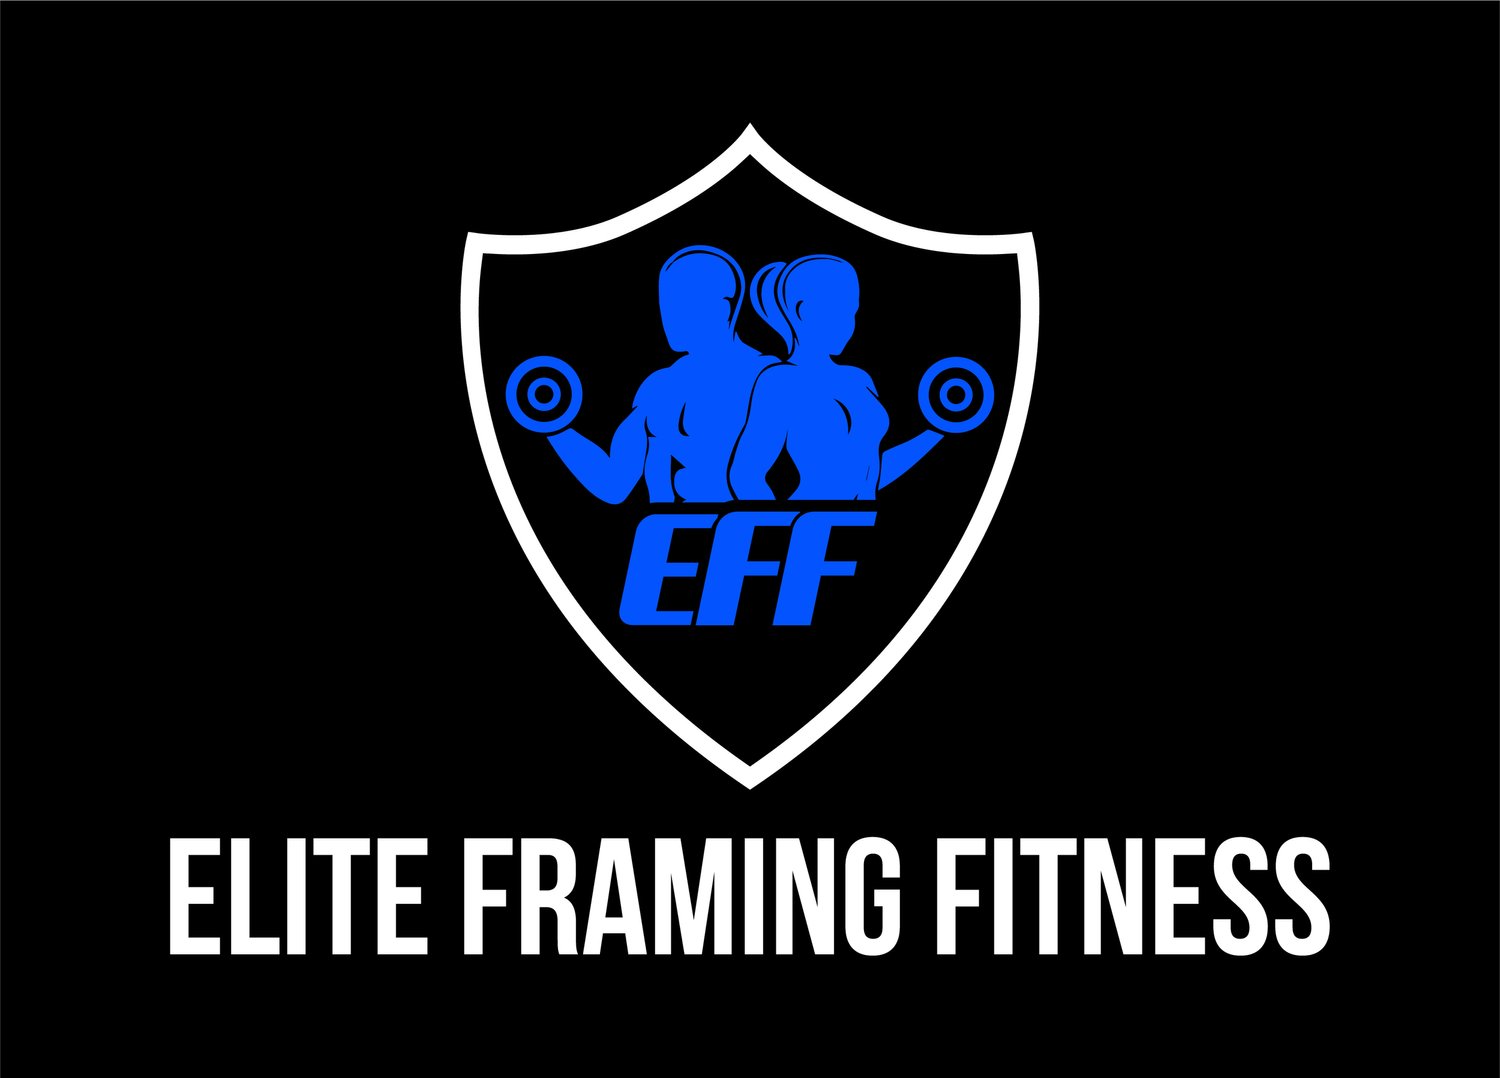 Elite Framing Fitness